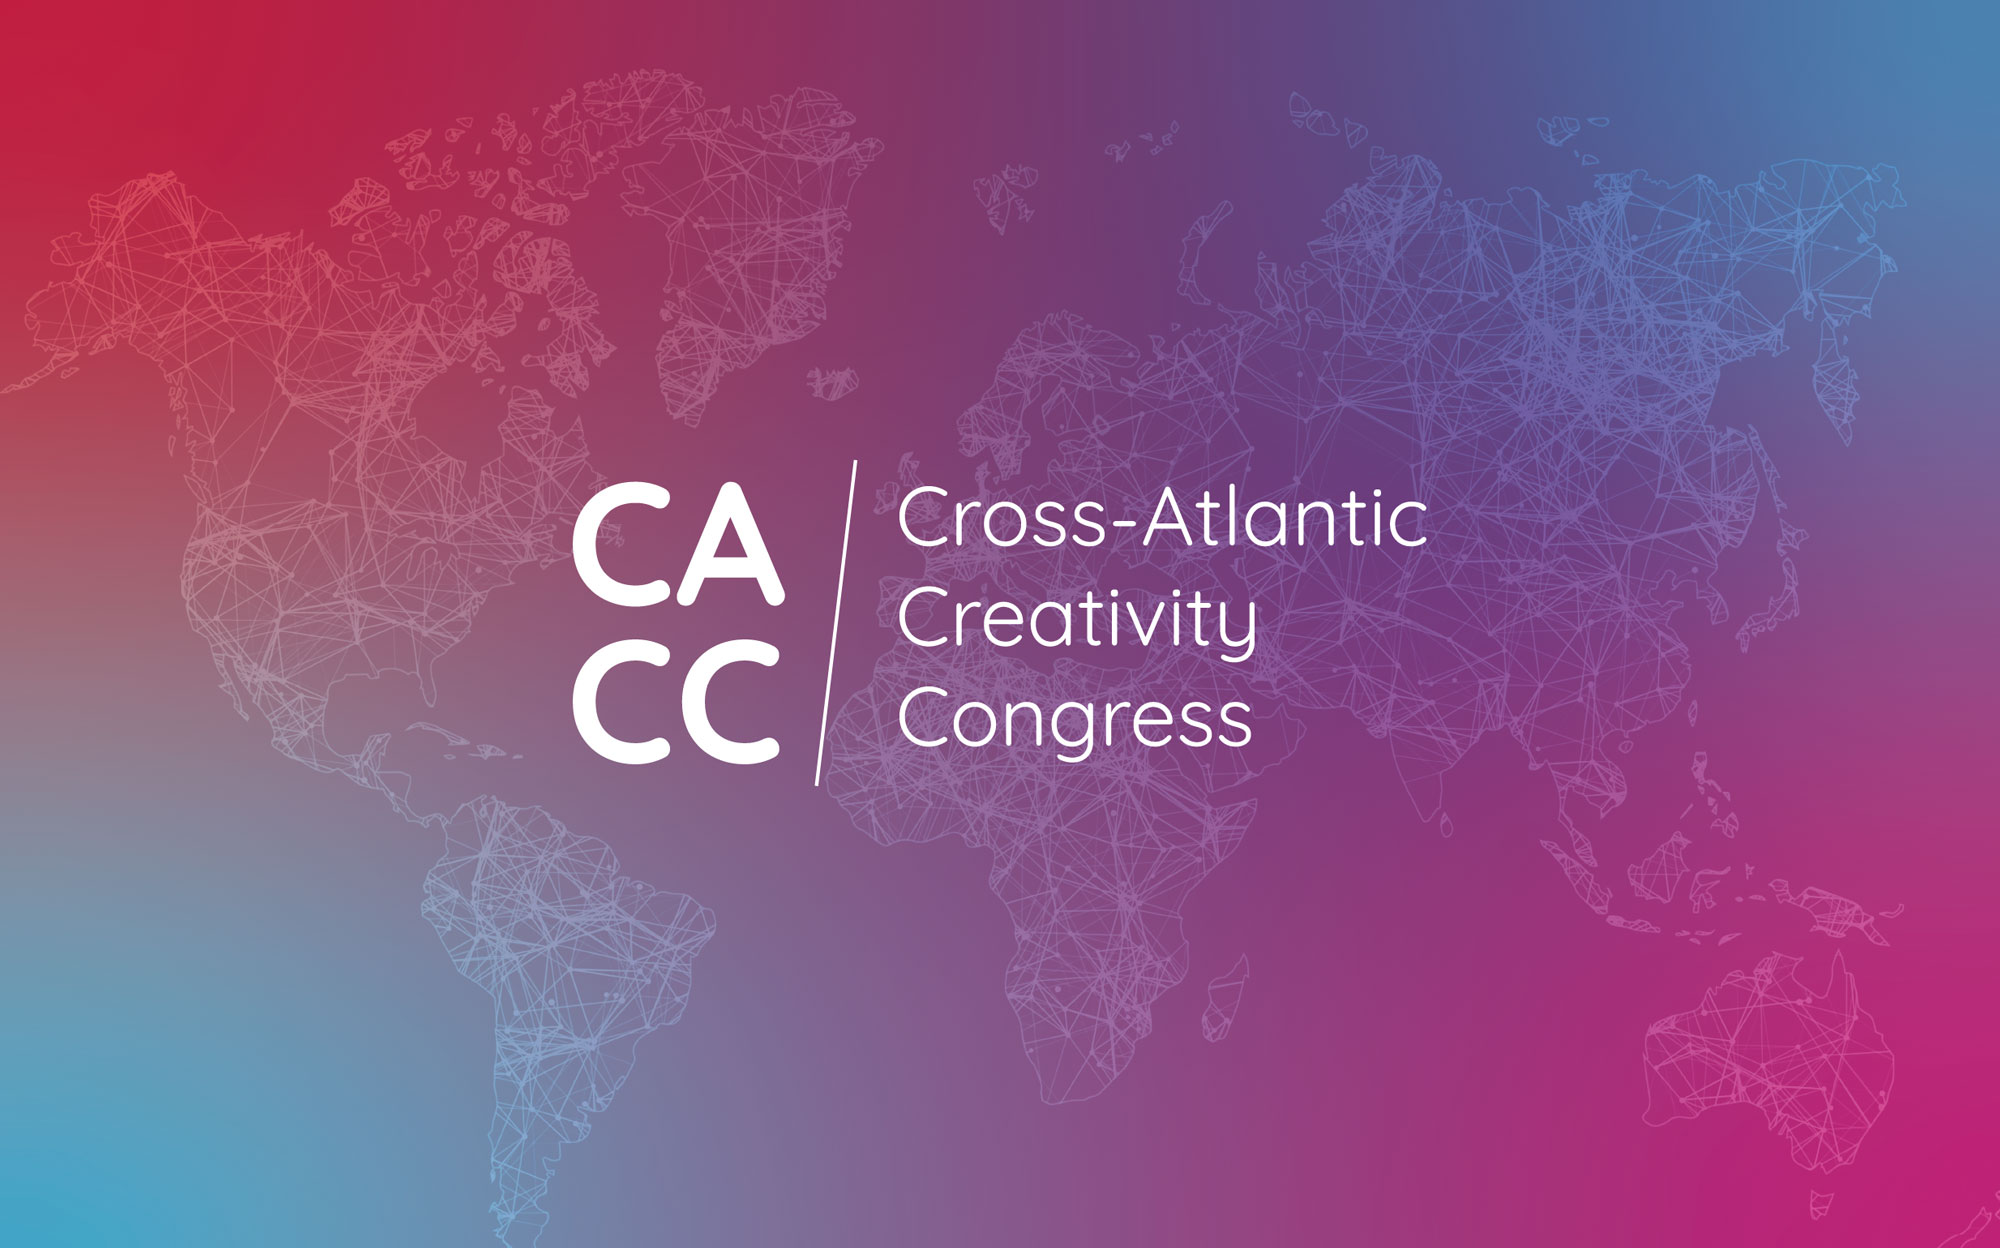 Cross-Atlantic Creativity Congress